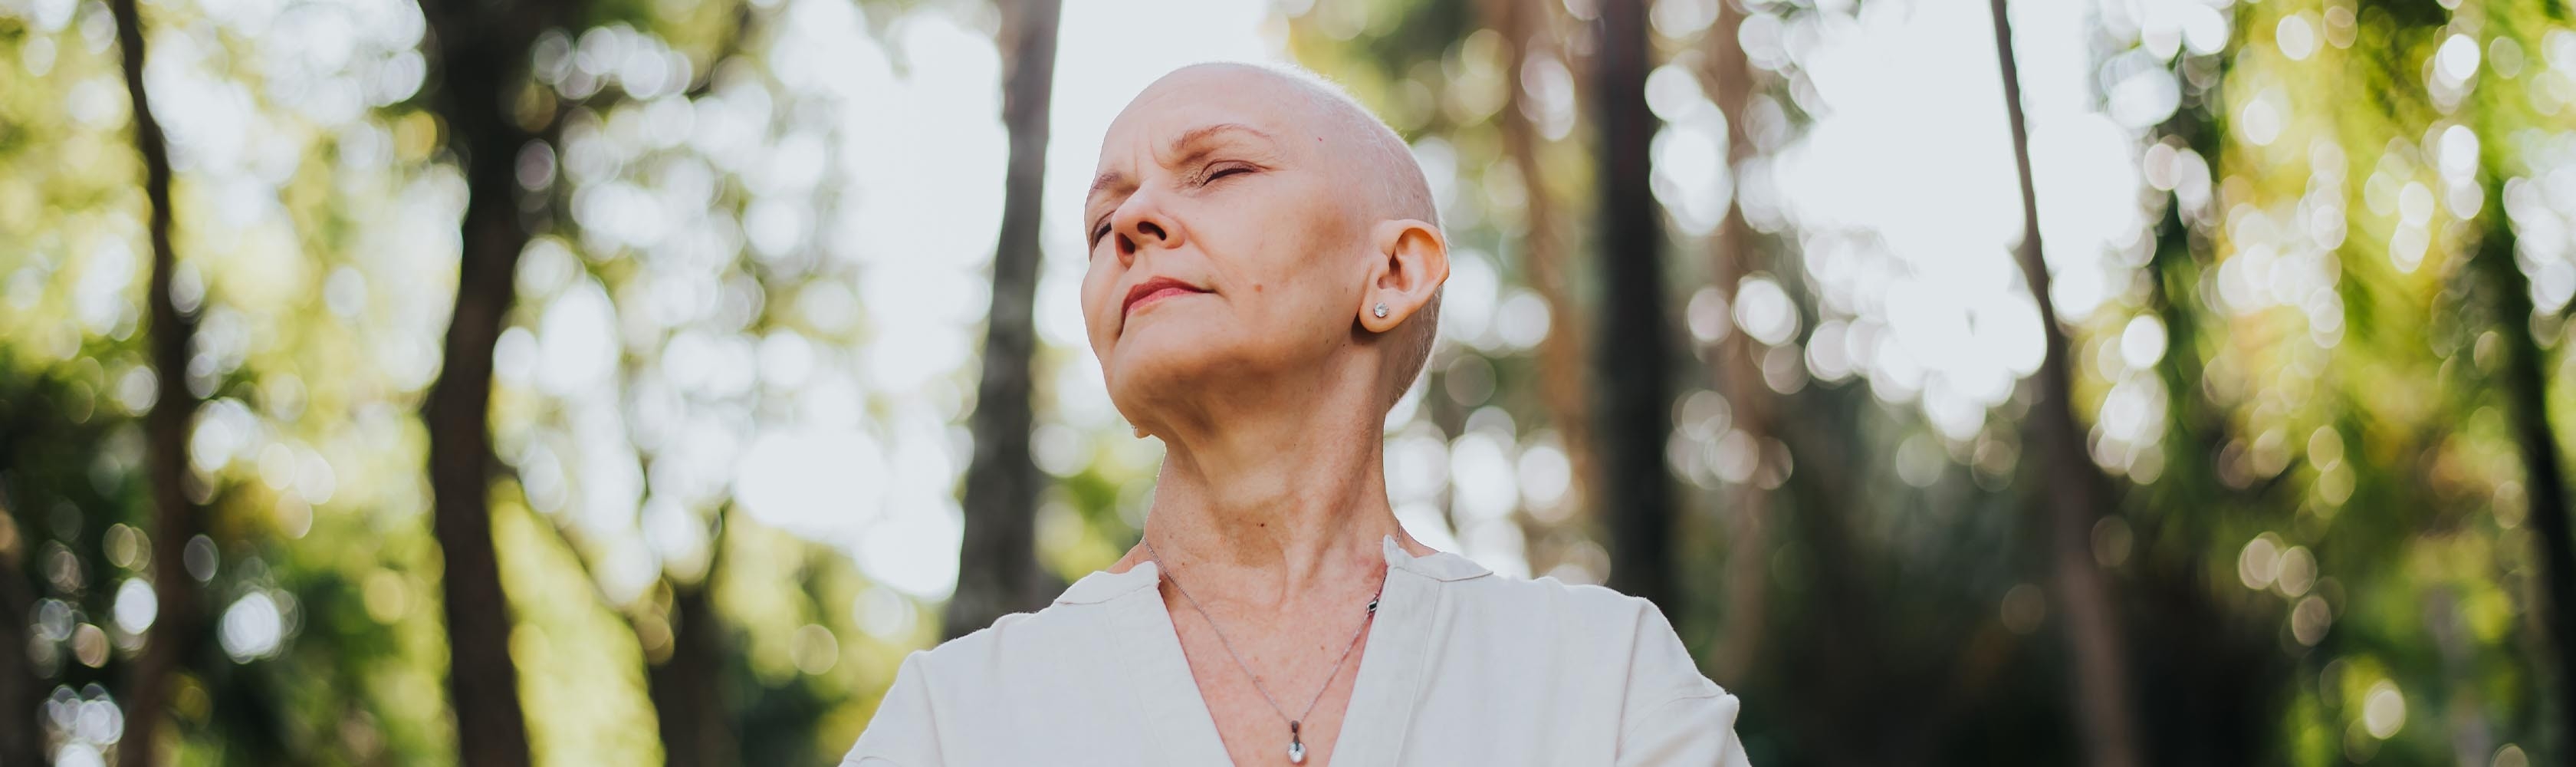 Krebserkrankte Frau steht im Wald bei Sonnenlicht.